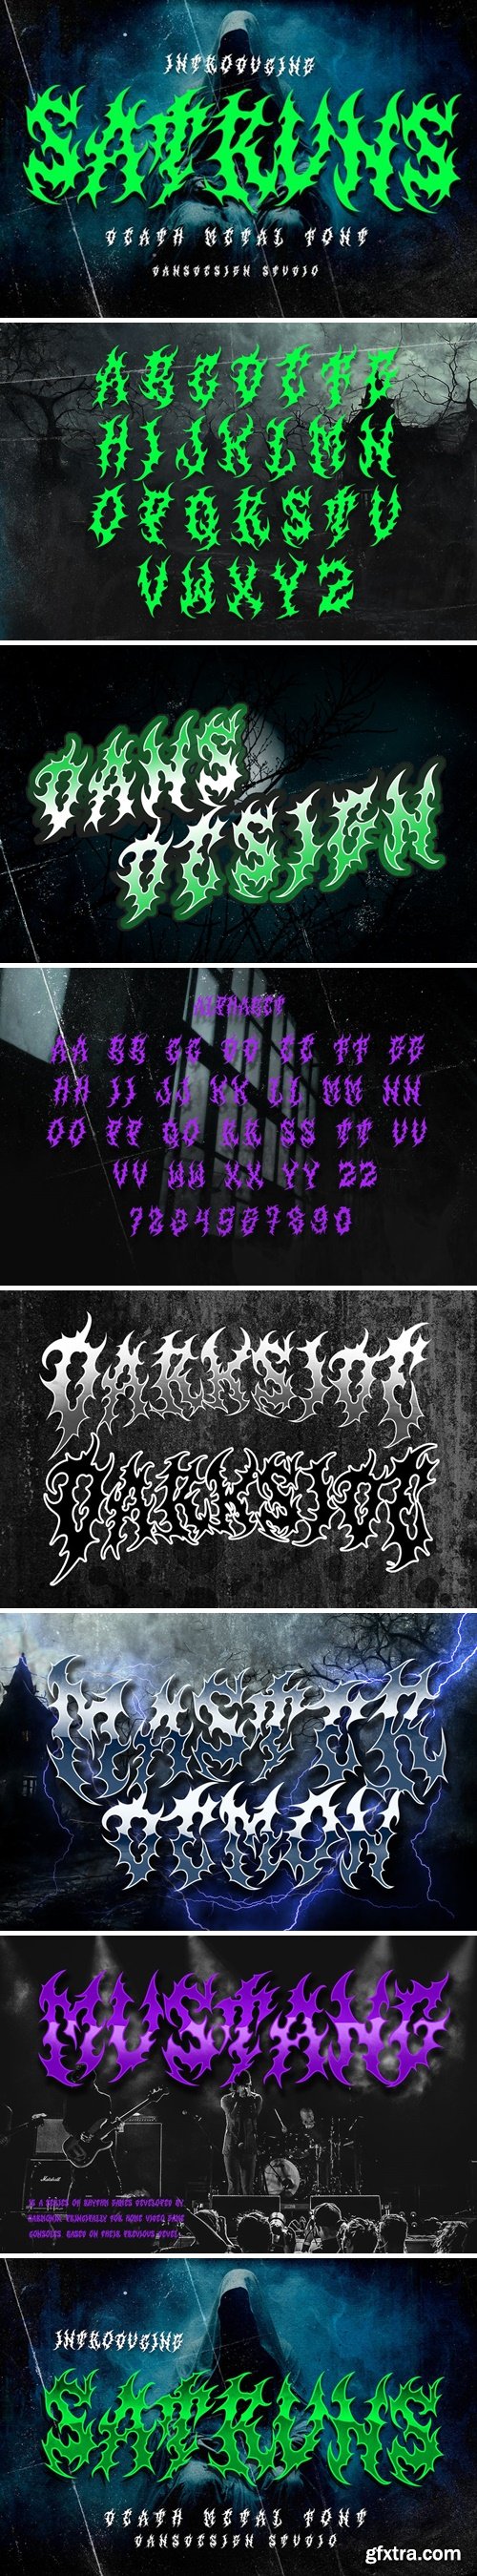 SATRUNS Metal Blackletter Horror Font